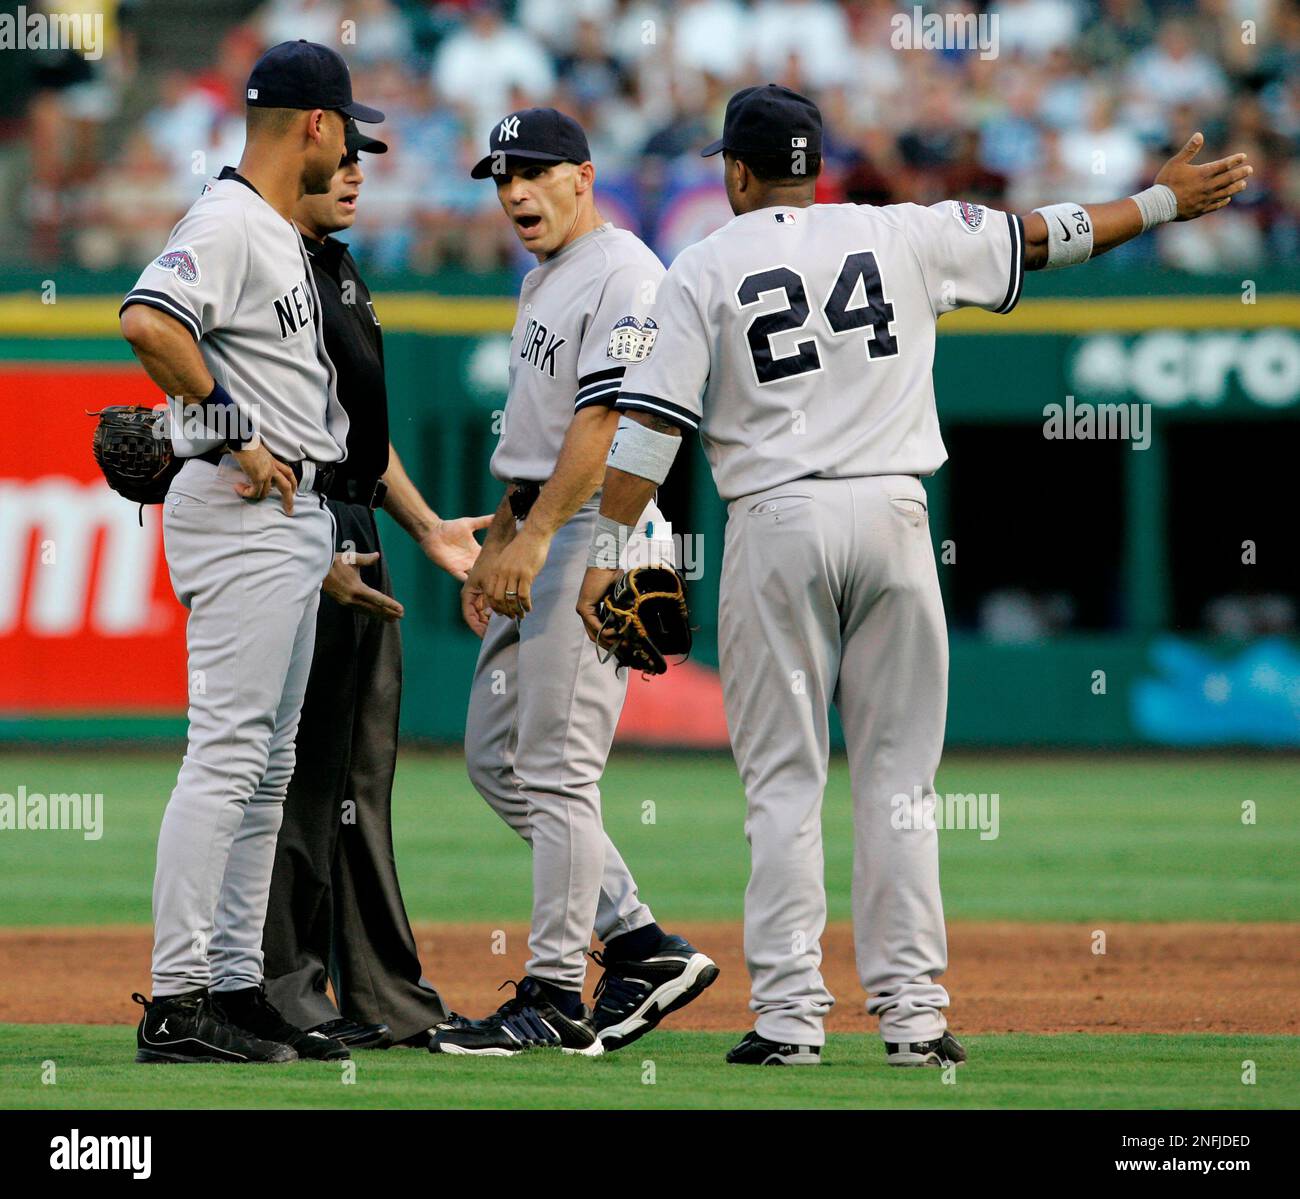 August 08, 2012: New York Yankees shortstop Derek Jeter (2) throws